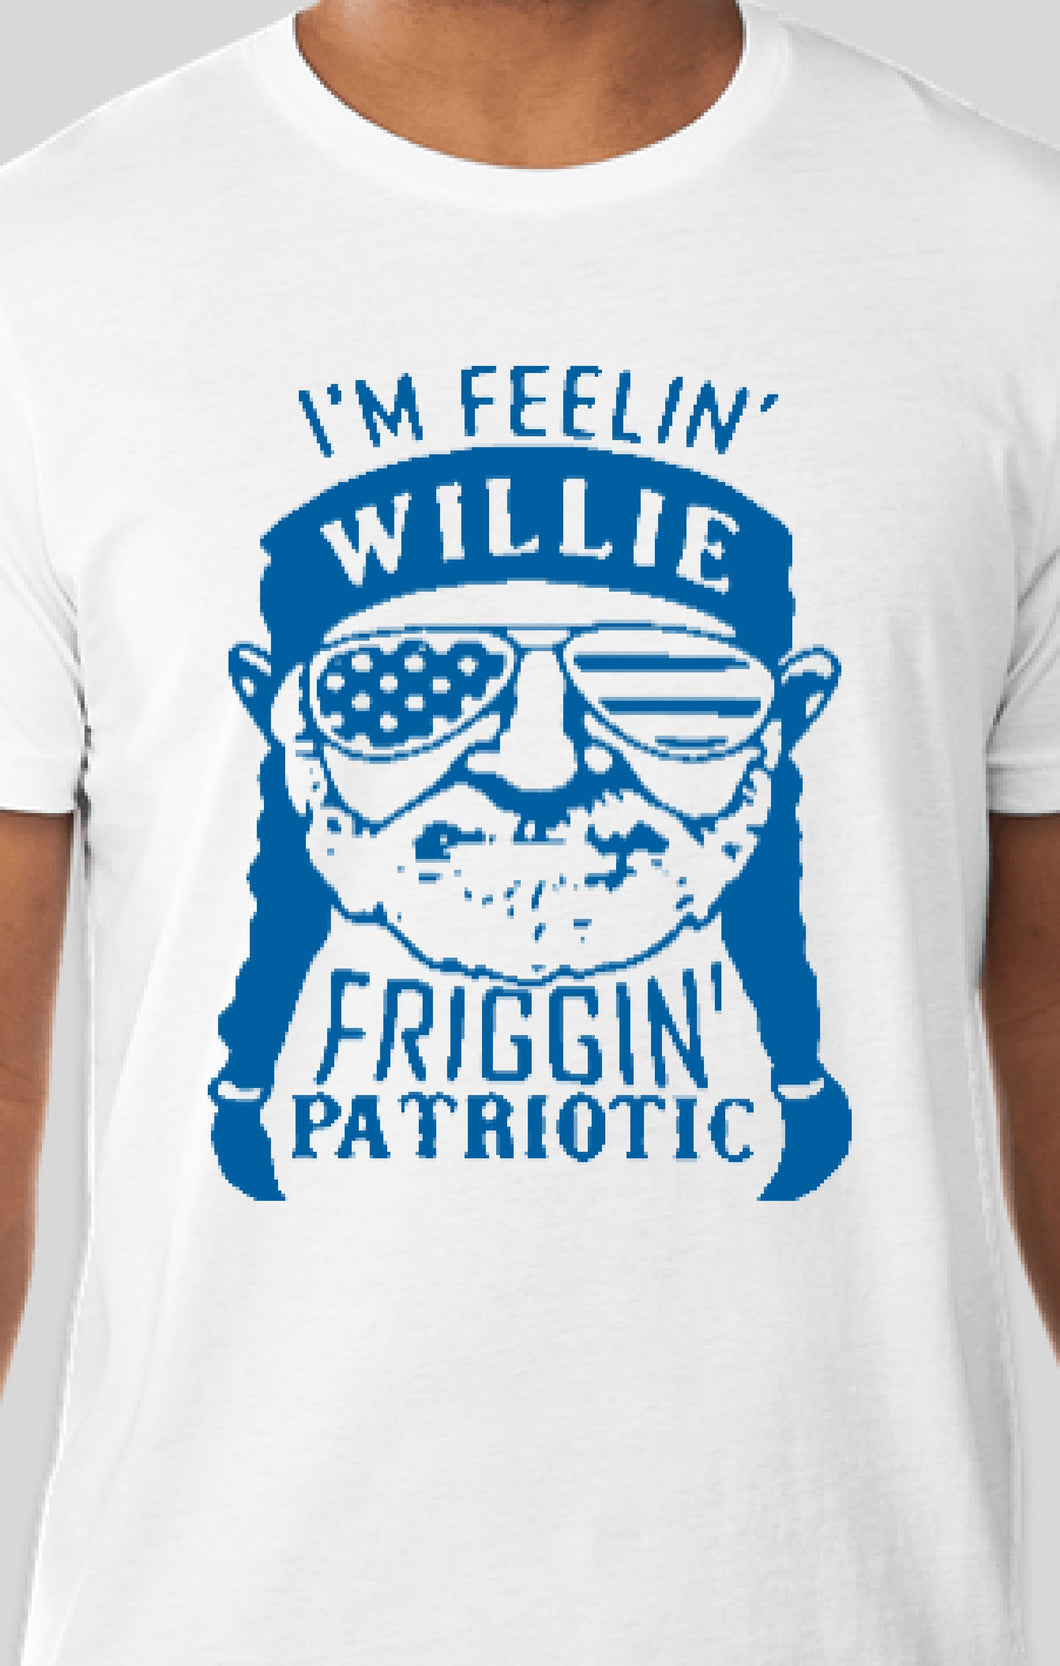 Willie Patriotic